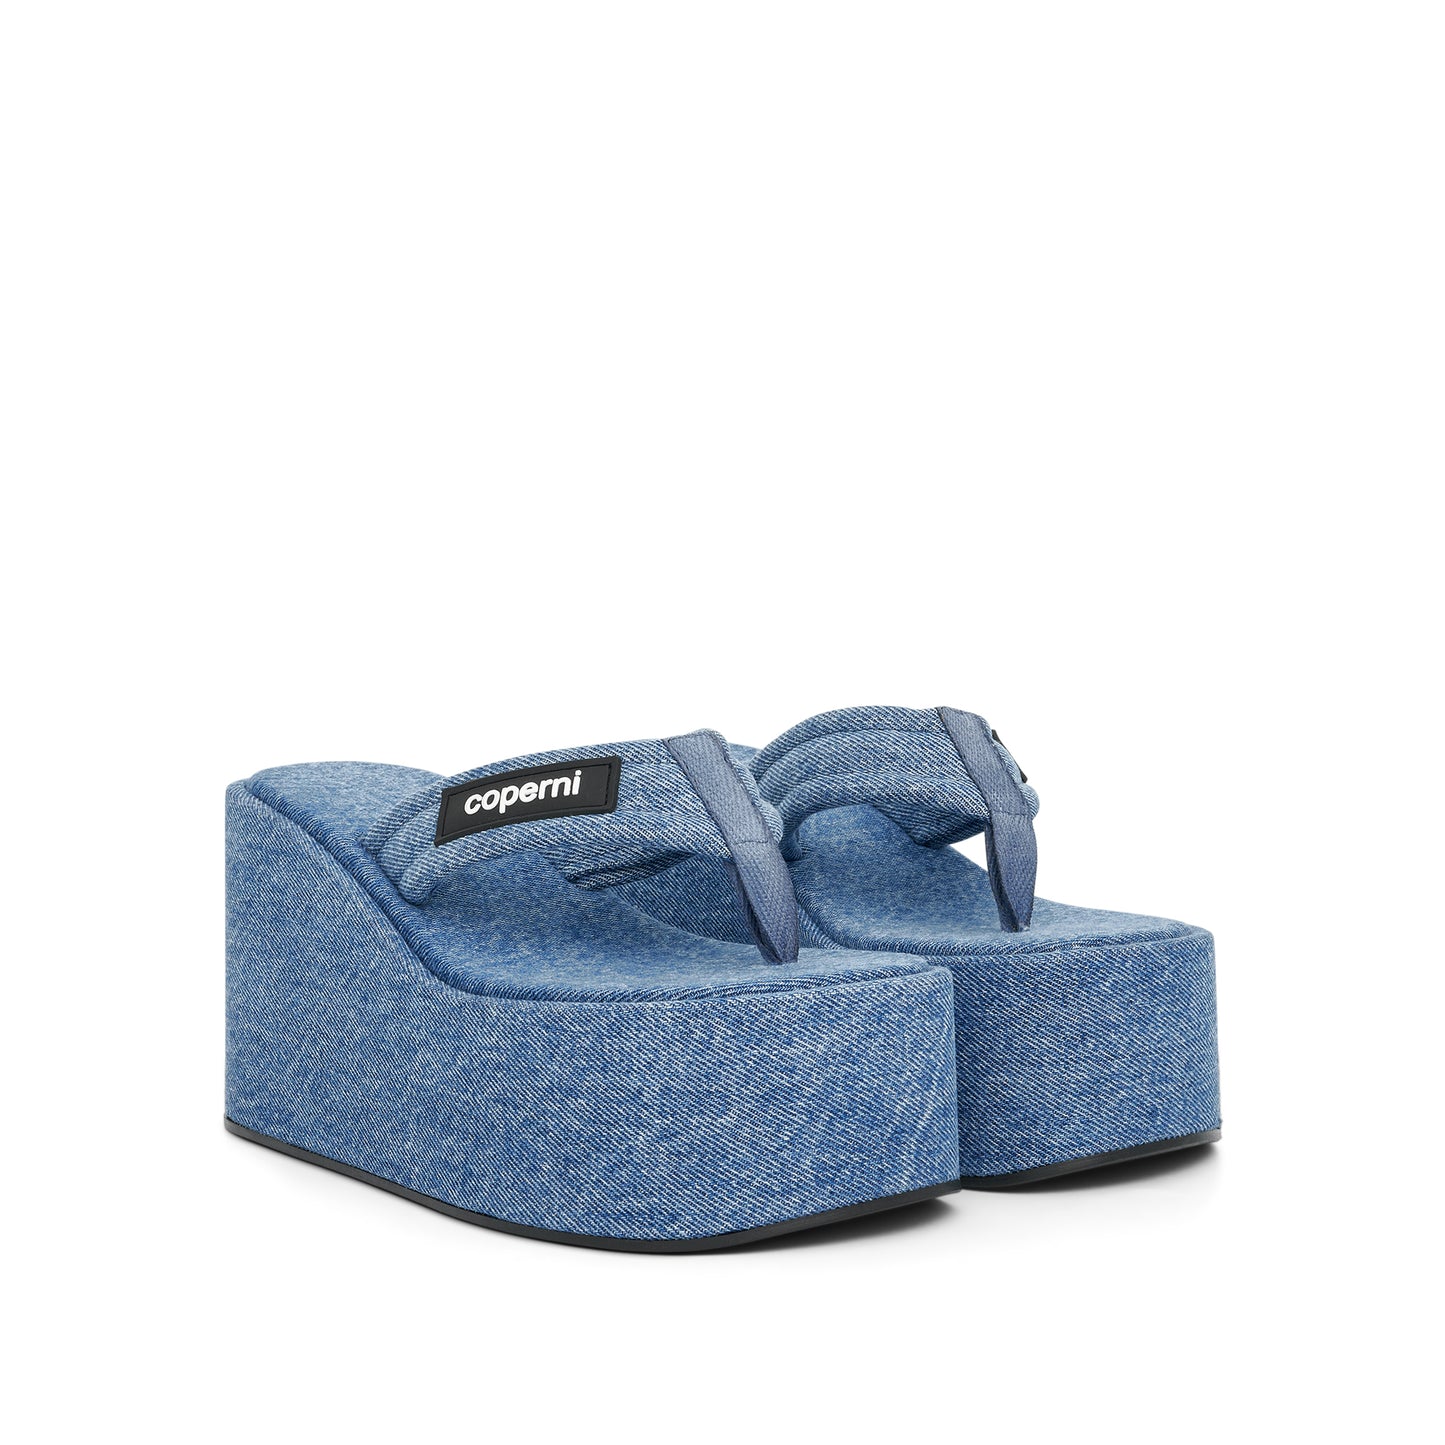 Denim Branded Wedge Sandal in Washed Blue